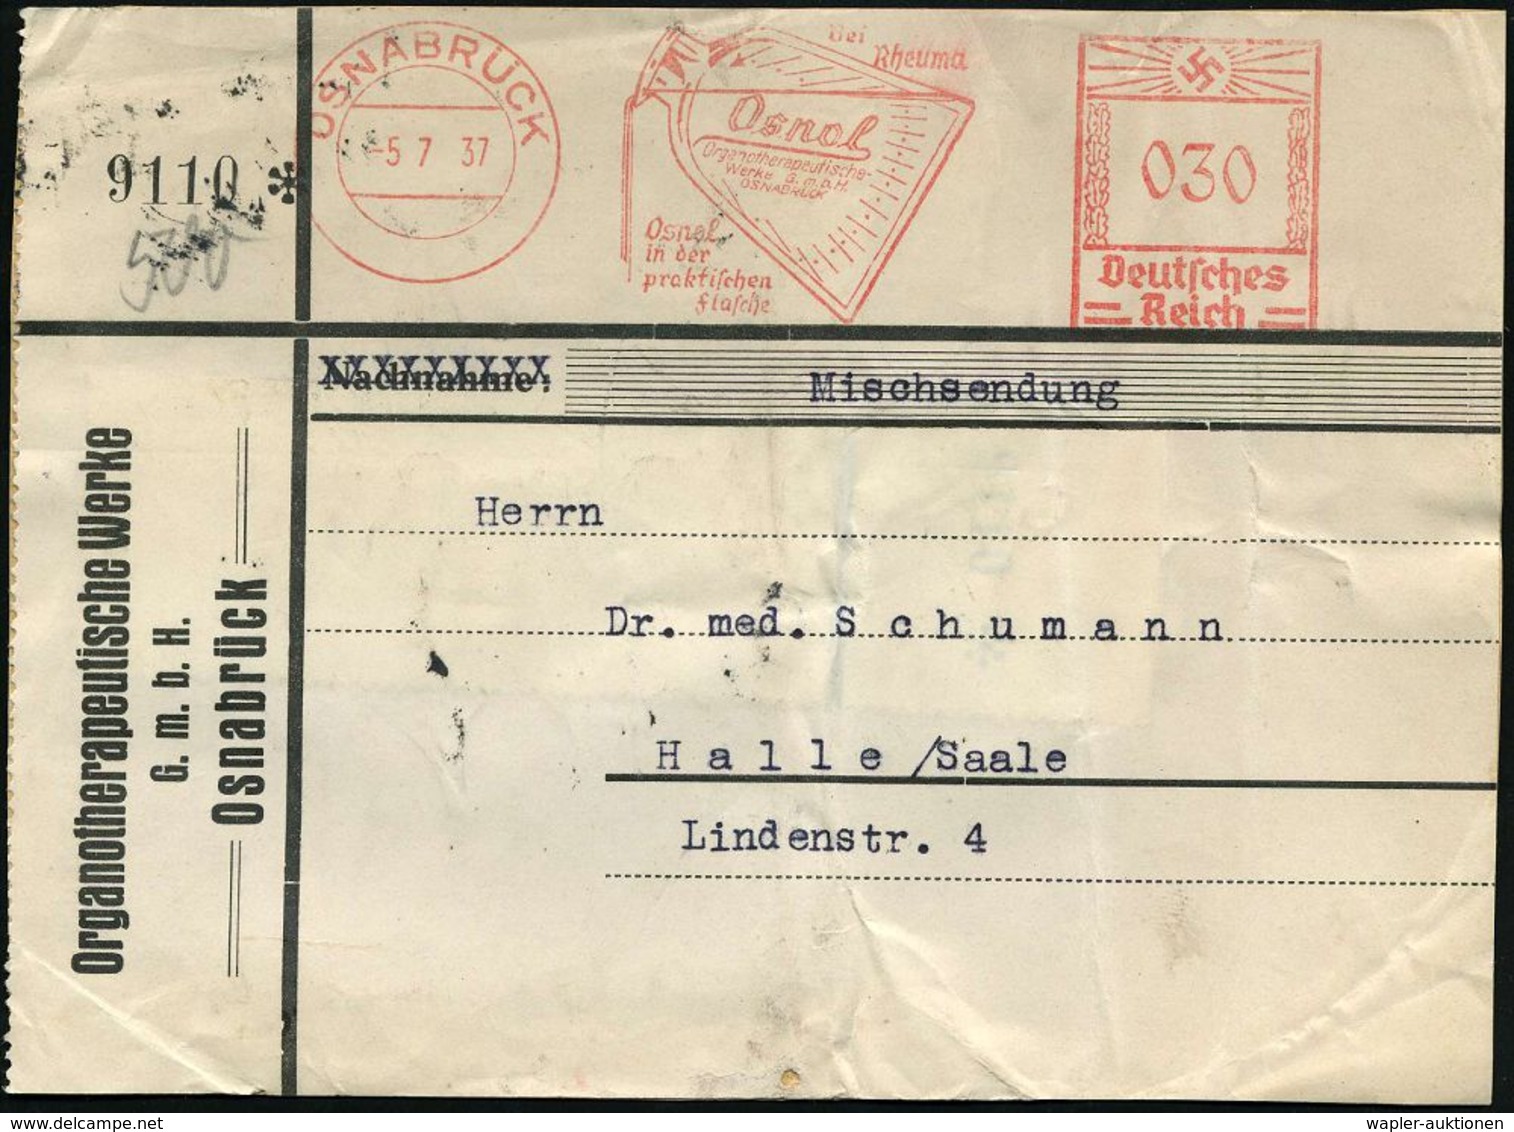 RHEUMATISMUS : OSNABRÜCK/ Bei/ Rheuma/ Osnol/ Organotherapeutische Werke.. 1937 (5.7.) AFS 030 Pf. (Arzneiflasche) Klar  - Maladies